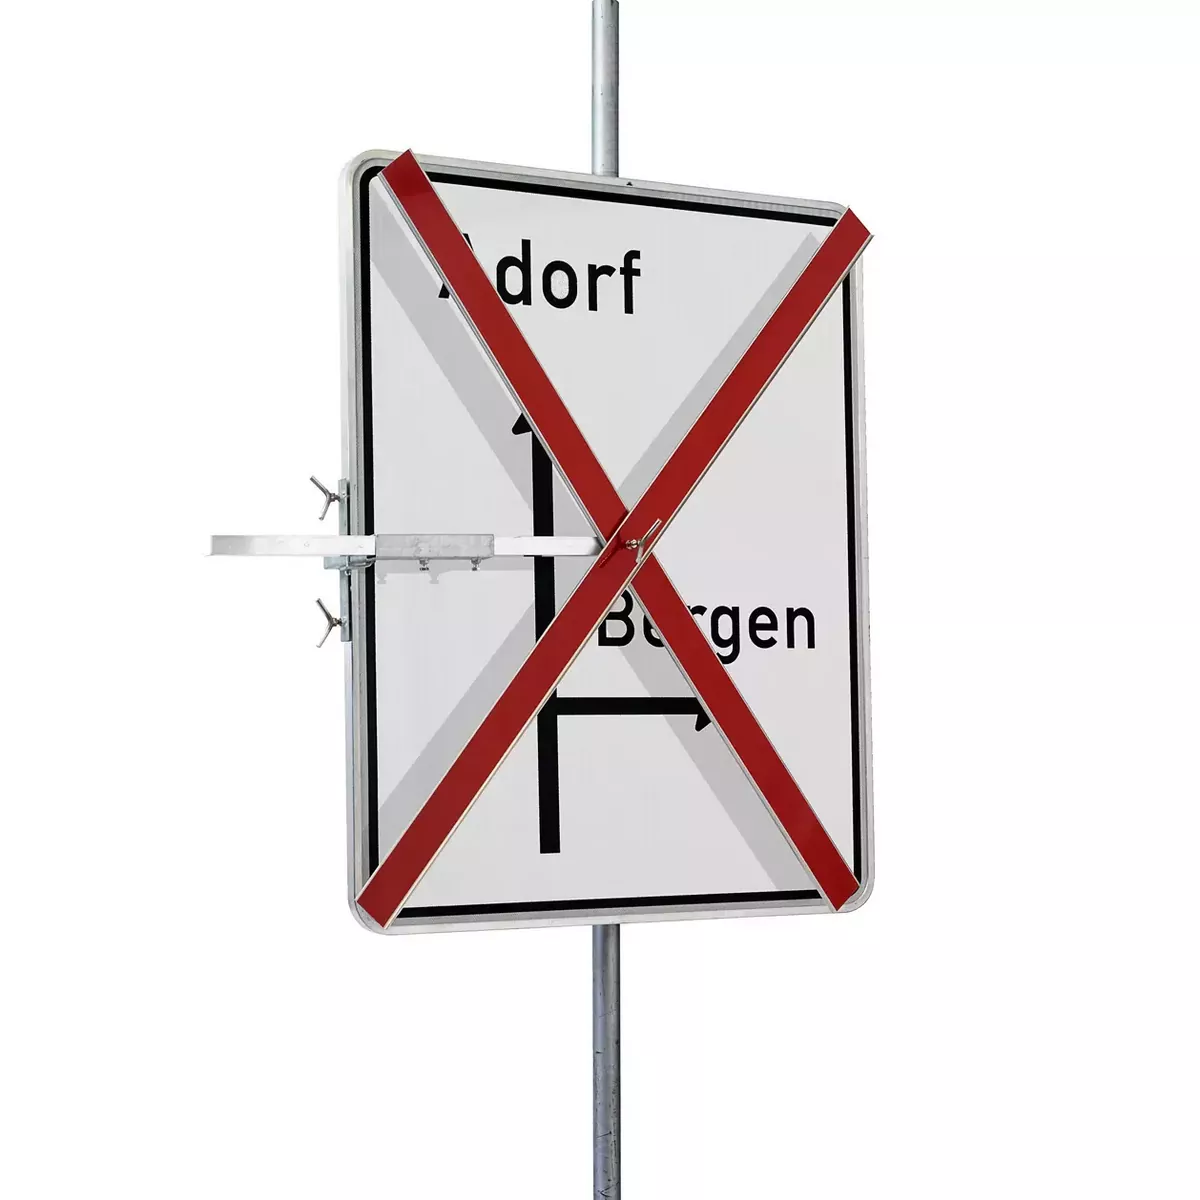 Auskreuzvorrichtung Verkehrszeichen